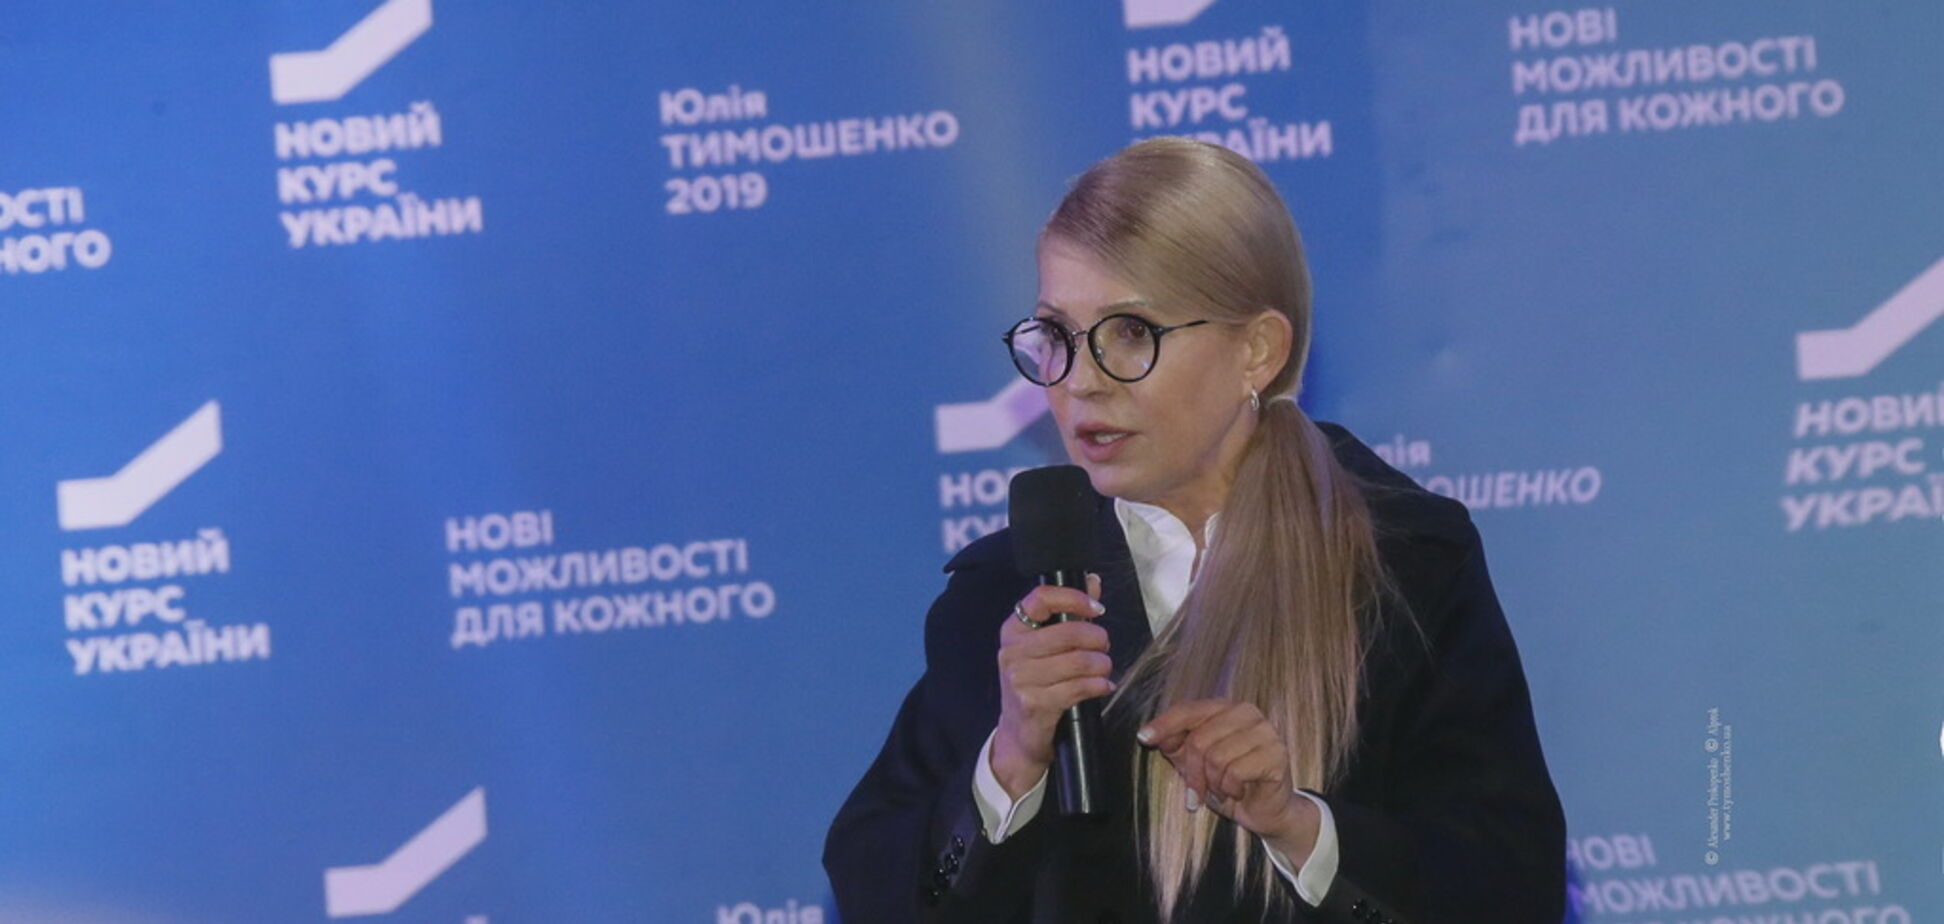 Тимошенко: персонифицированная пенсионная система обеспечит достойную жизнь людей